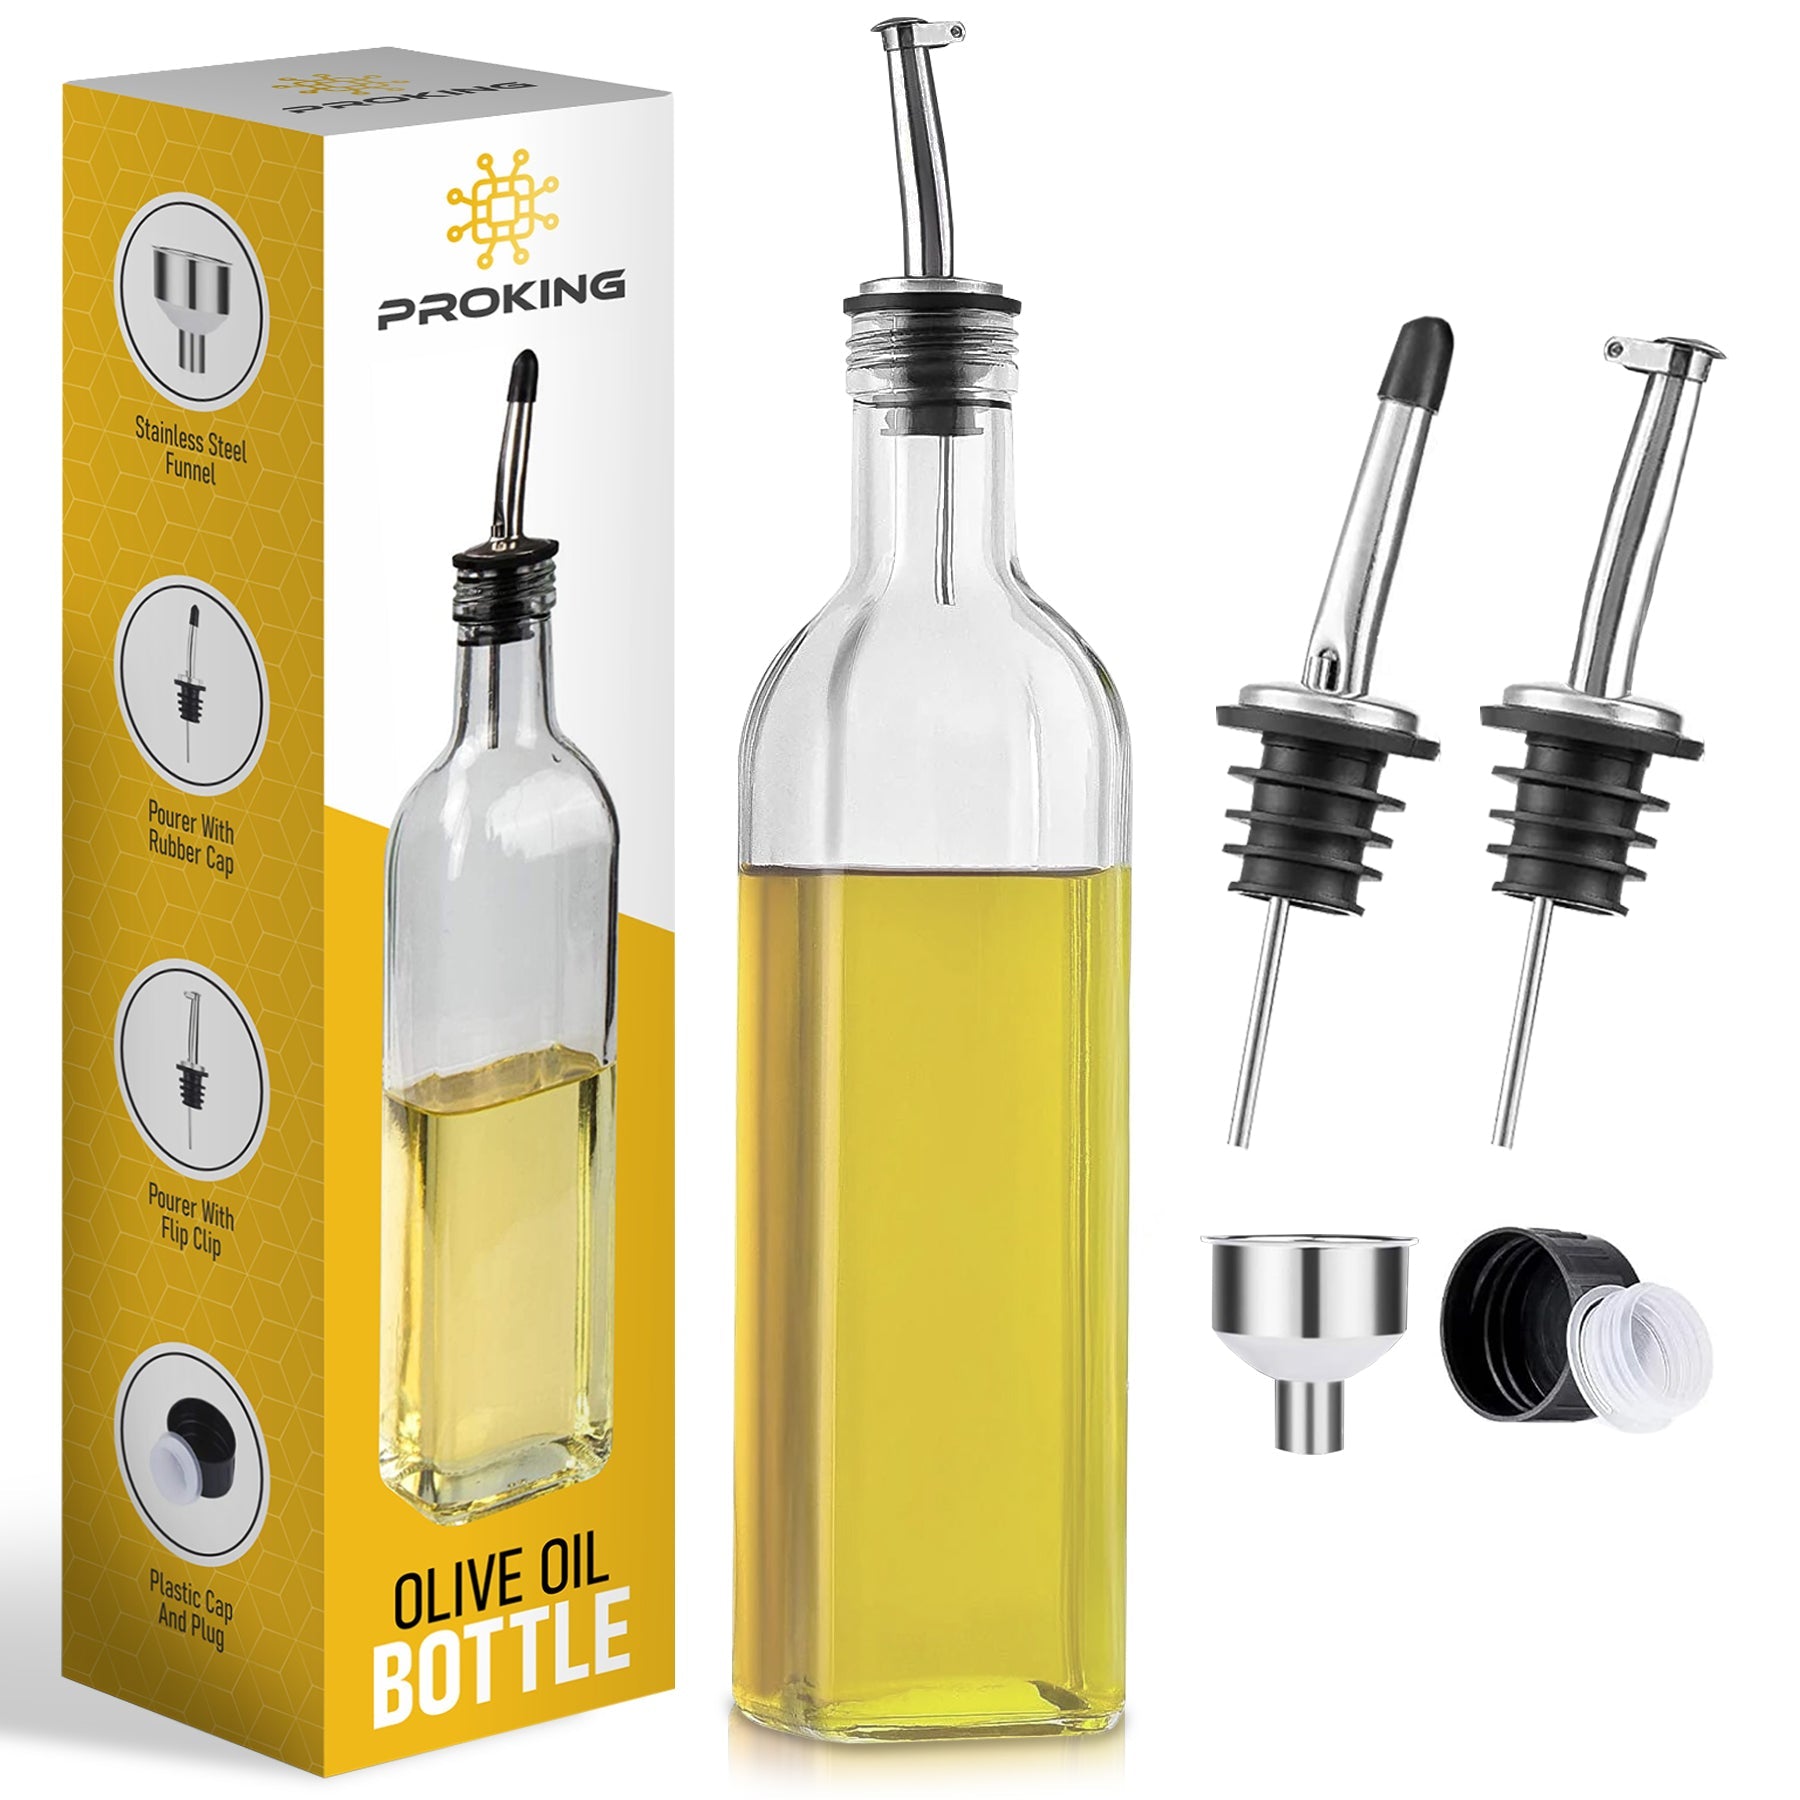 PROKING Olijfolie Fles met Schenktuit – Olijfoliefles – Schenktuit Olijfolie – Glazen Oliefles – Inclusief Schenktuit, Dop & Trechter – 500 ml - PROKING